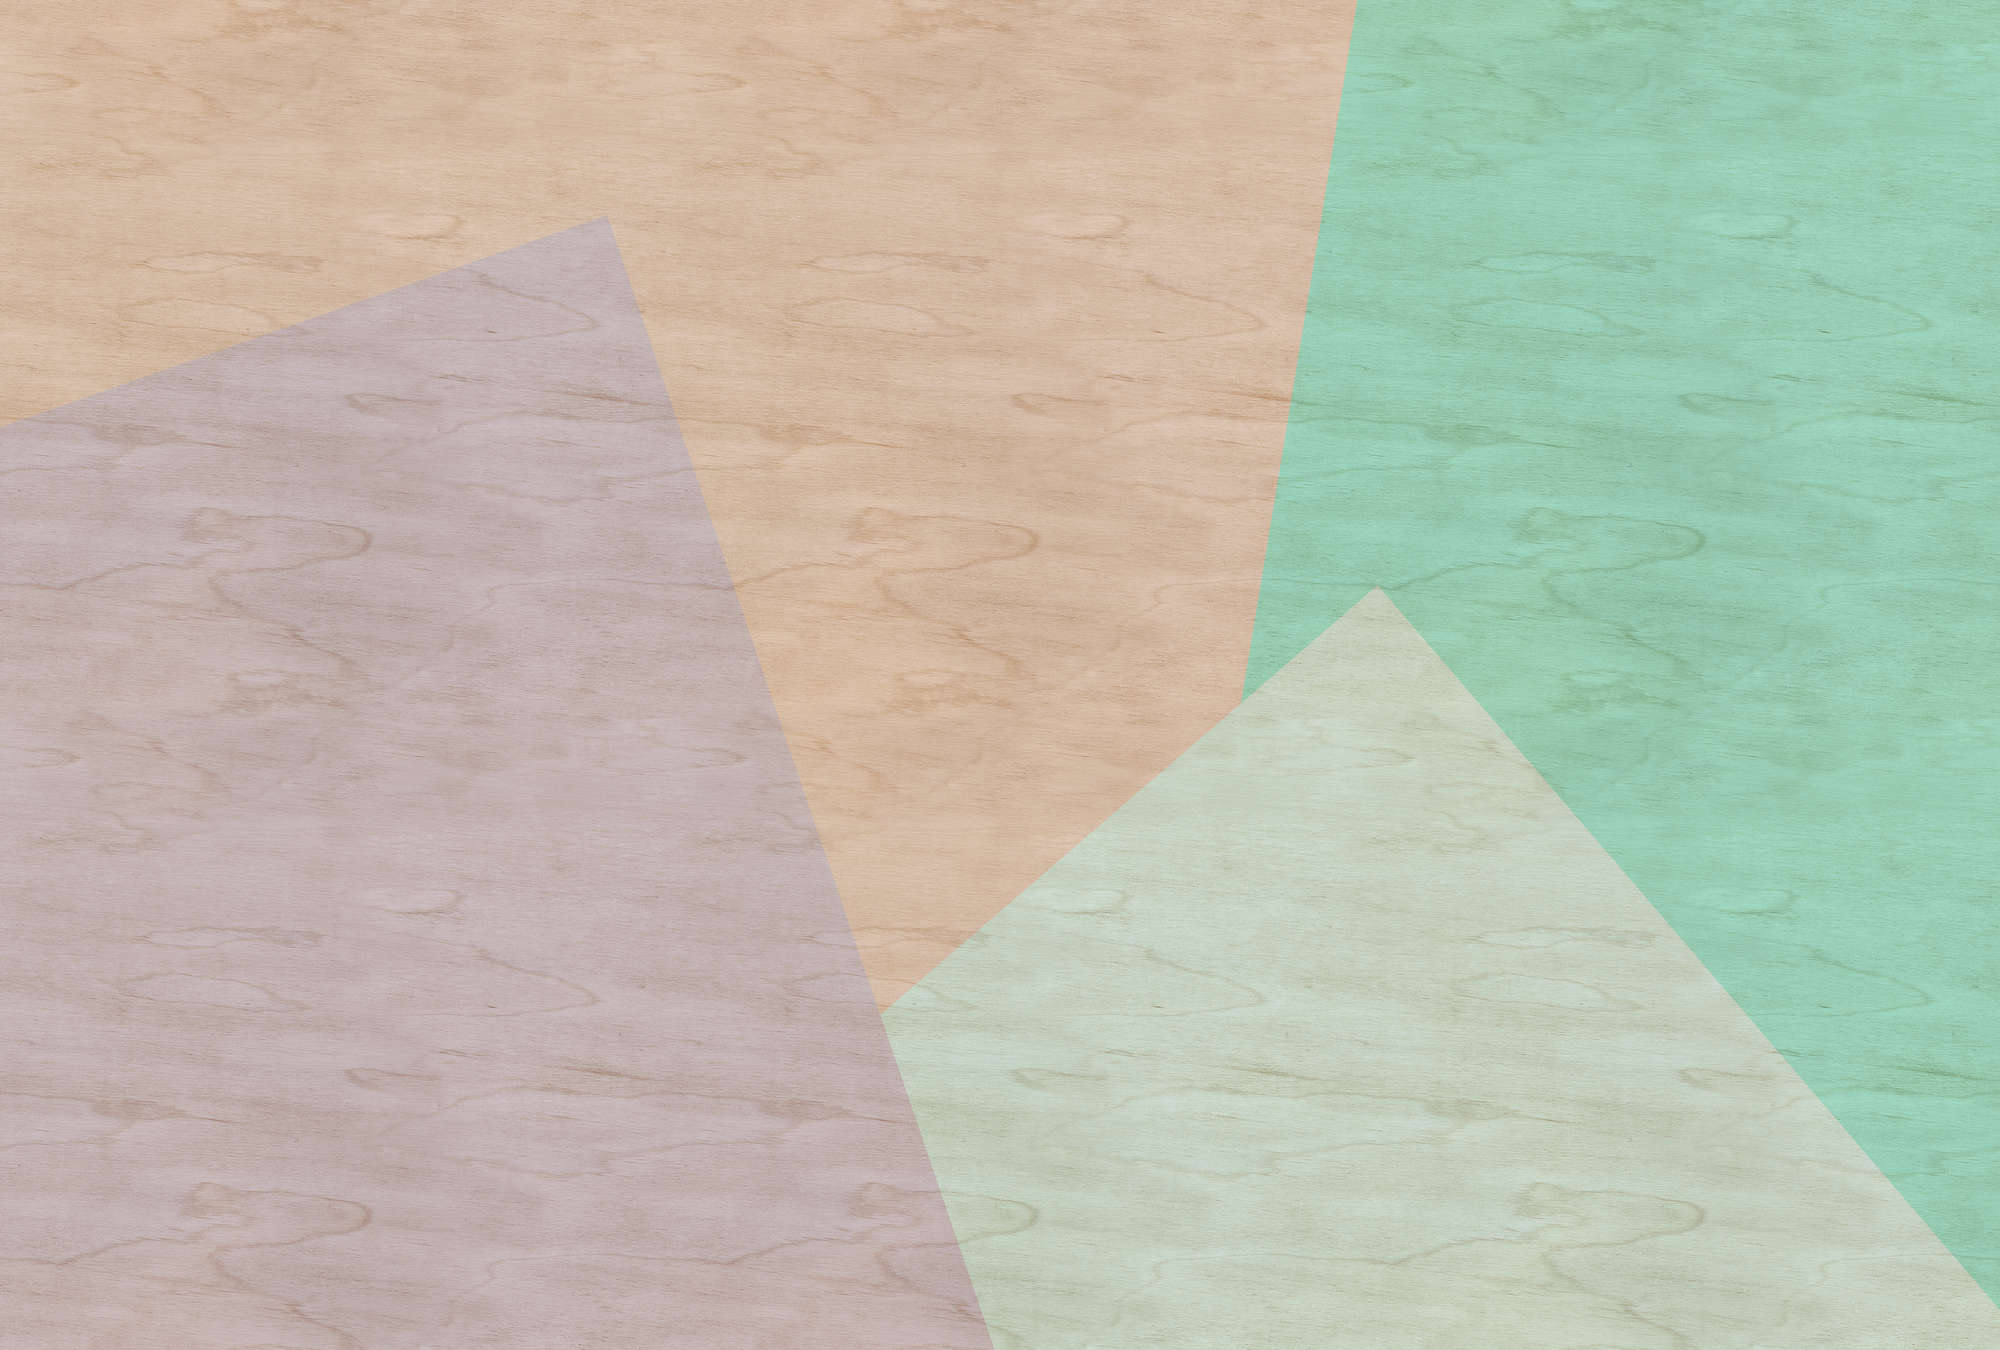             Inaly 1 - Papel pintado fotográfico abstracto y colorido con estructura de contrachapado - Beige, Verde | Tela no tejida lisa de alta calidad
        